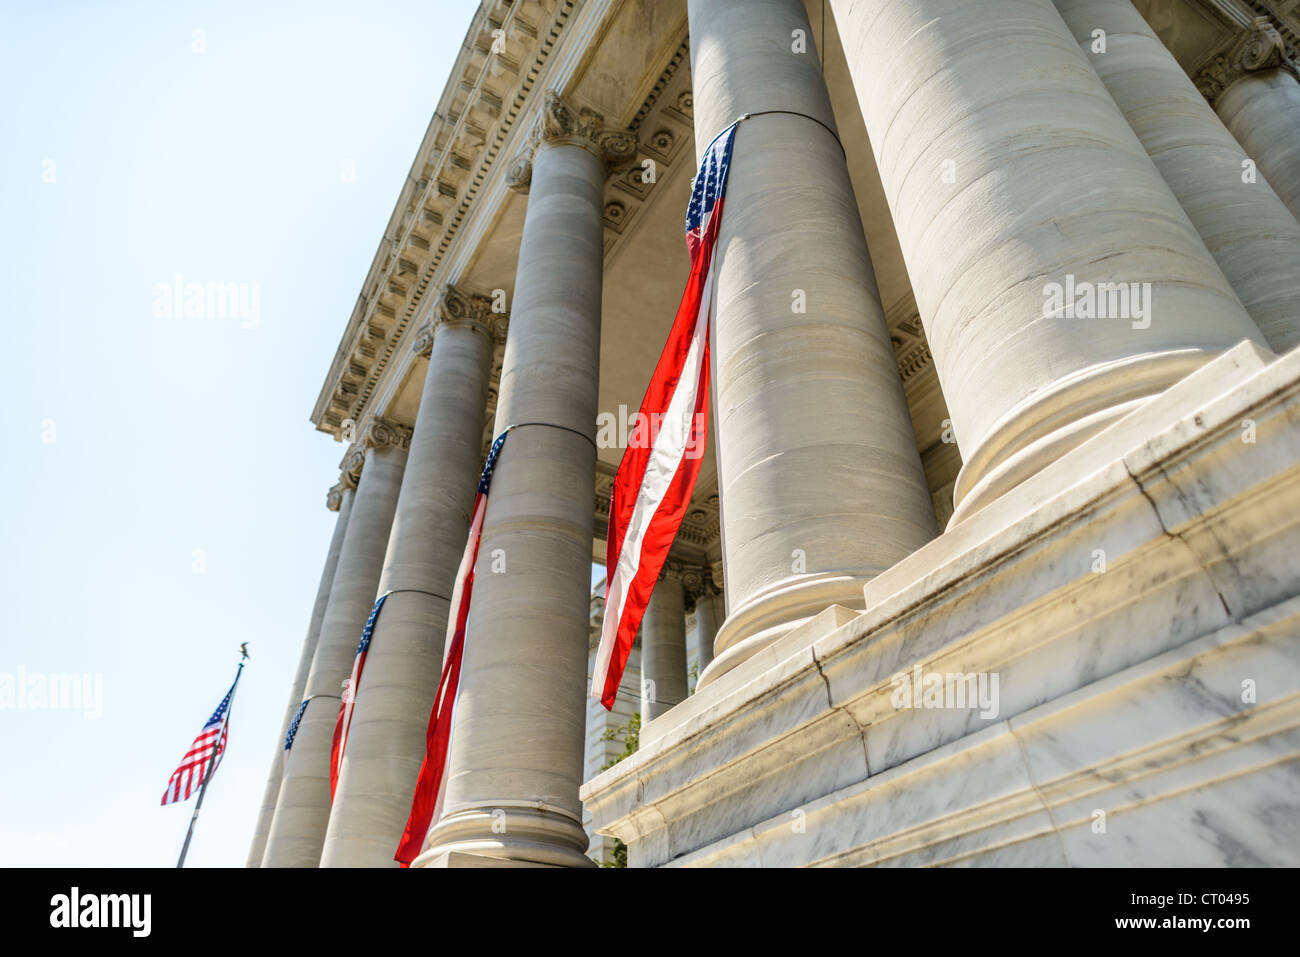 WASHINGTON DC, USA - Continental Memorial Hall. Colonnes à l'avant du bâtiment de Memorial Hall Continental près de la Maison Blanche à Washington DC, avec des drapeaux décorés pour le 4 juillet (date de l'indépendance). Banque D'Images